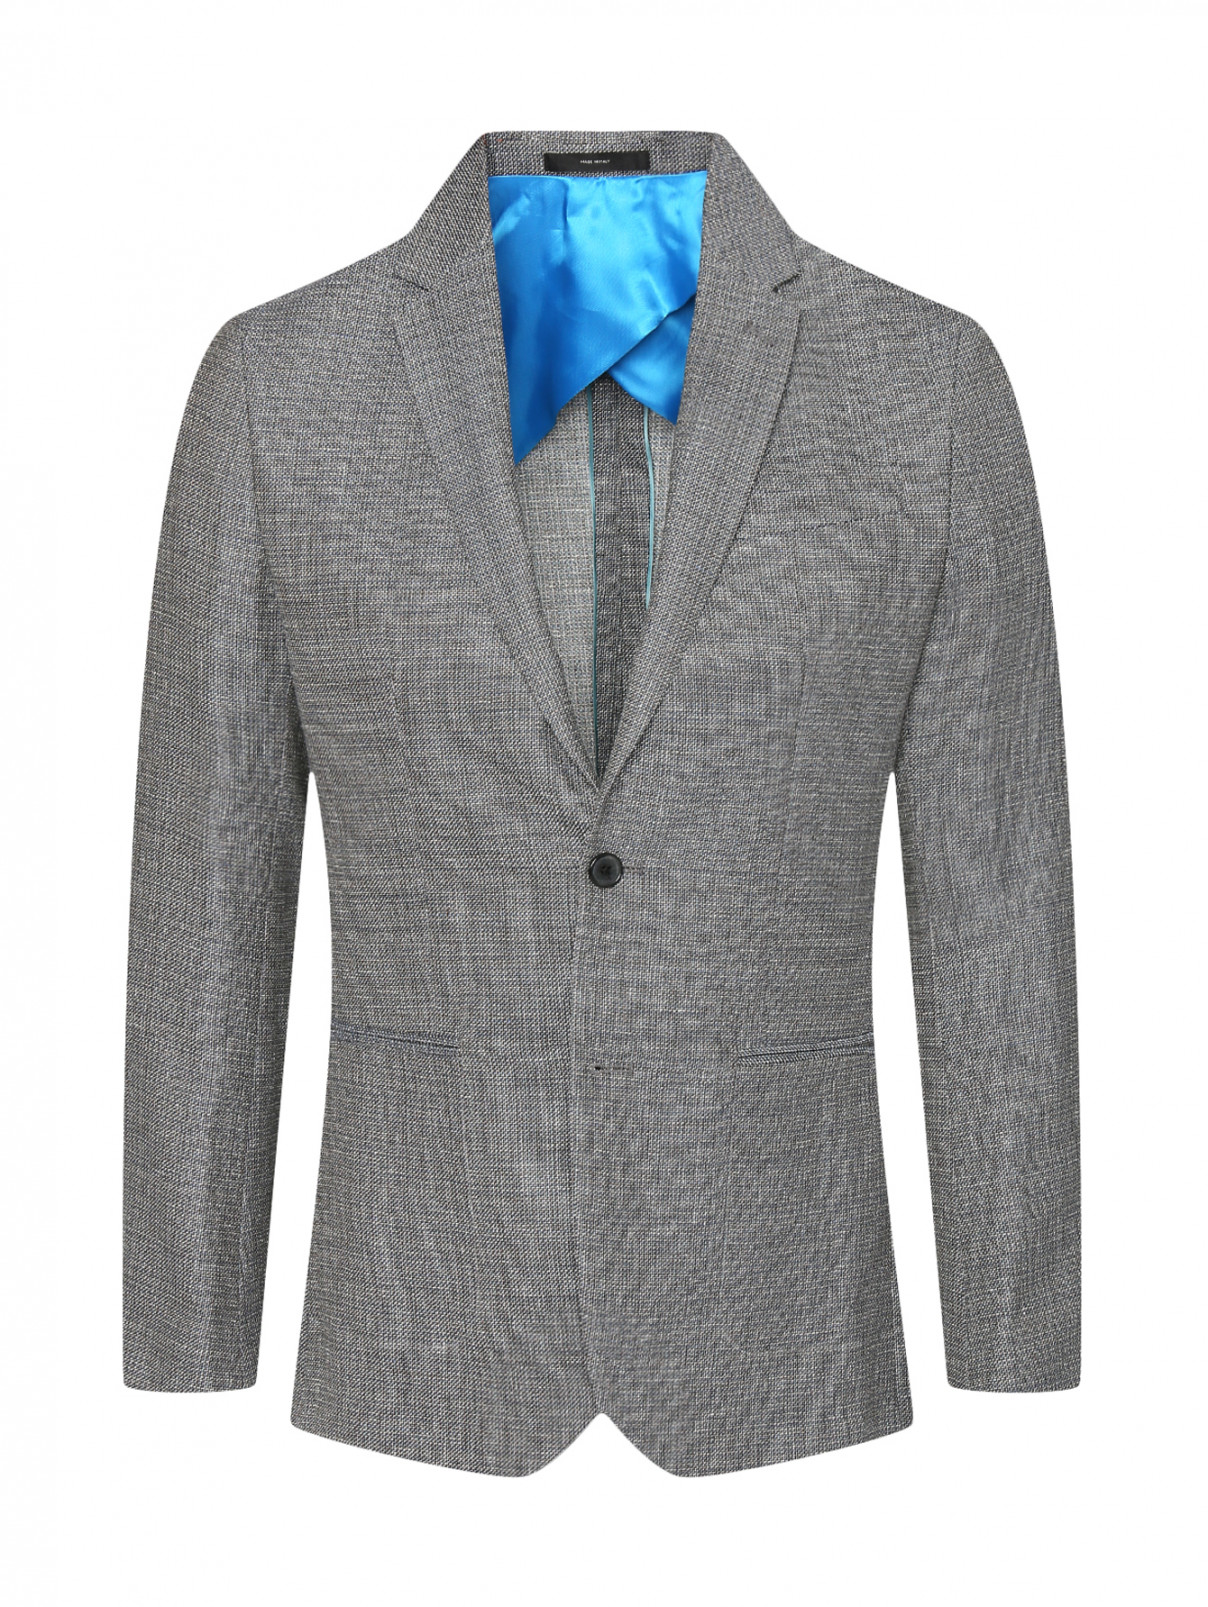 Однобортный пиджак из шерсти и льна Paul Smith  –  Общий вид  – Цвет:  Серый